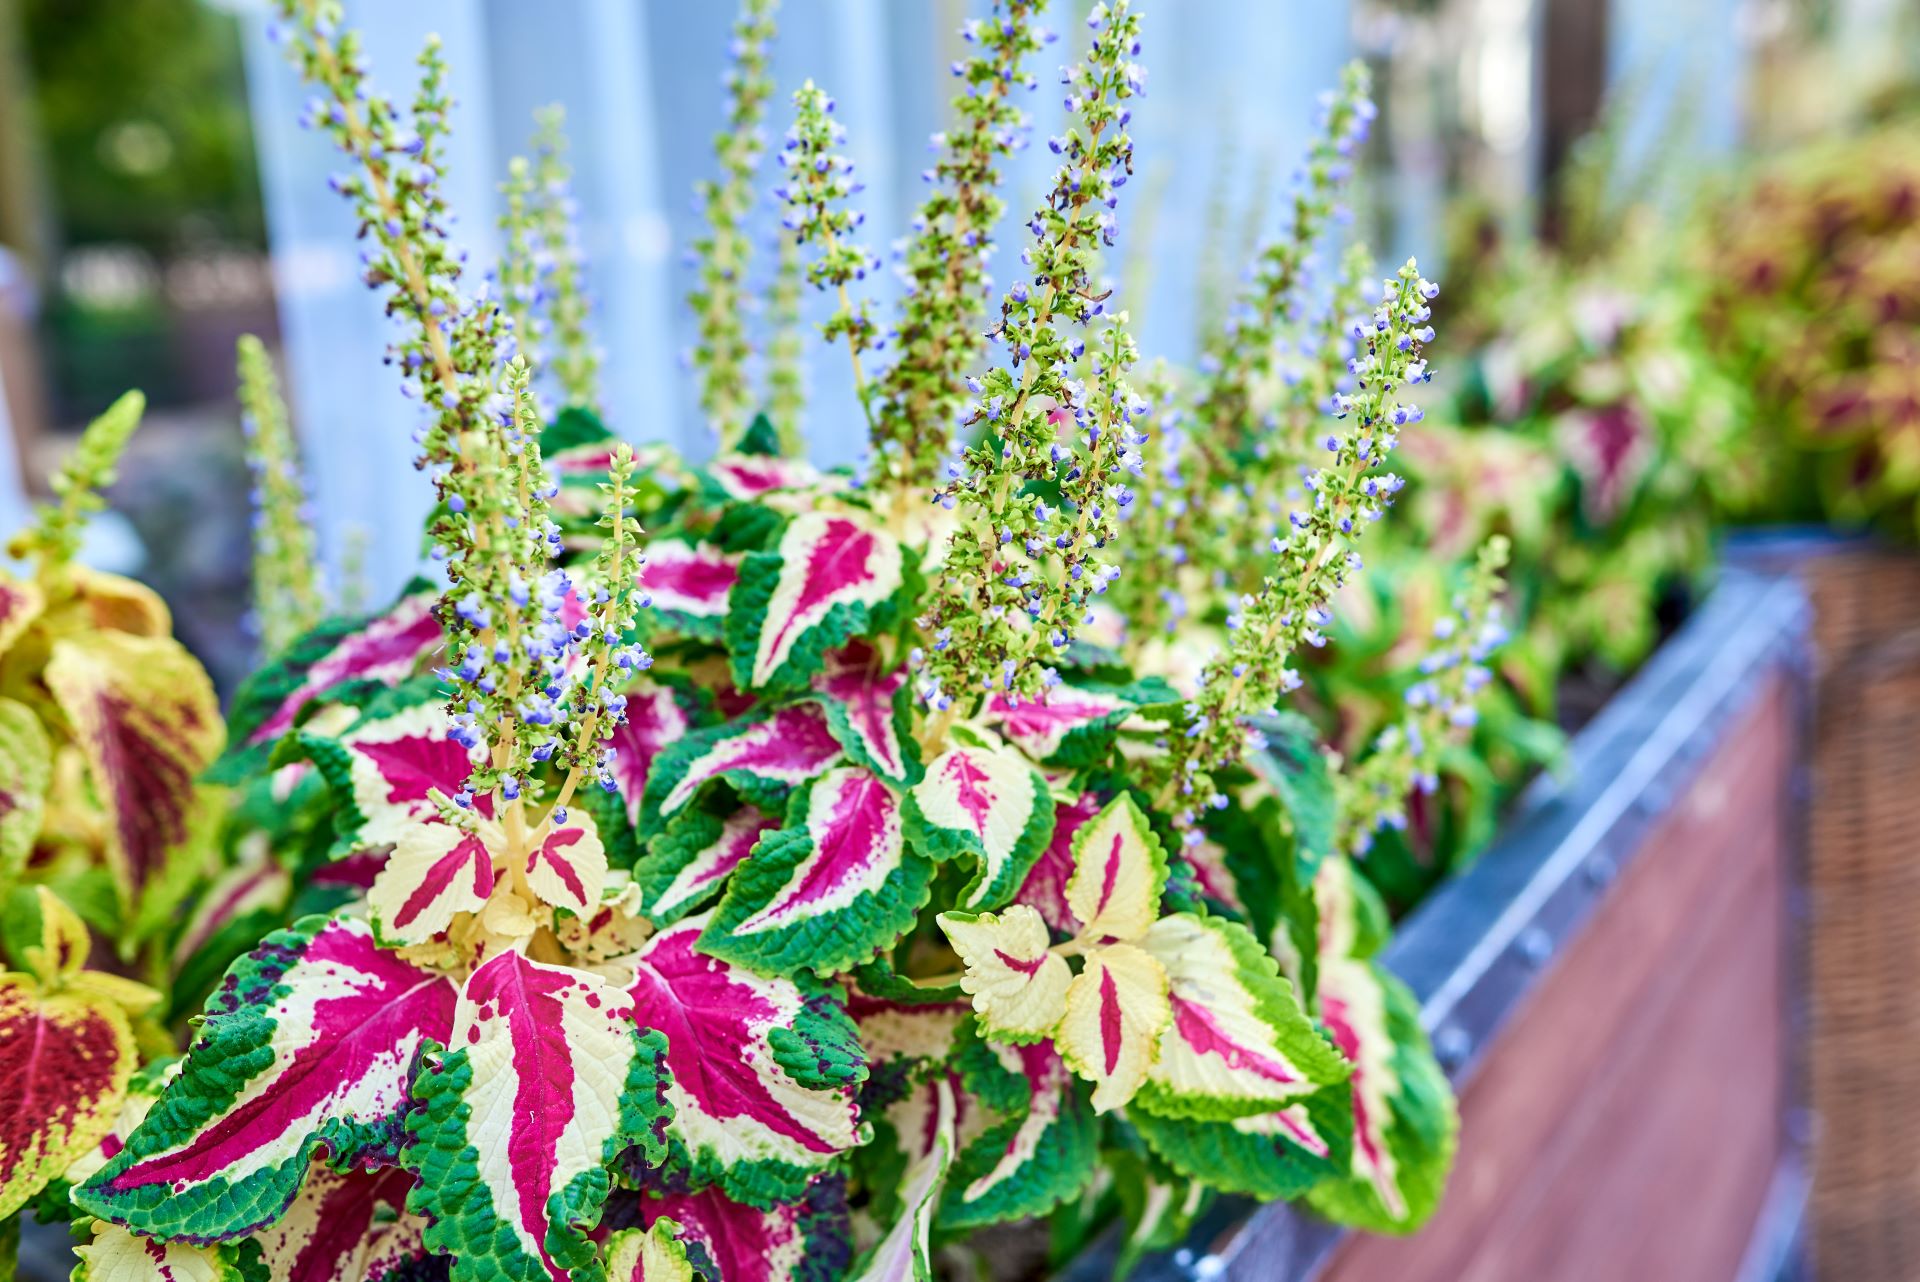 Buntnessel mit auffällig gefärbten Blättern in Pink, Weiß und Grün mit zart-violetten Blütenständen wachsen in einem Balkonkasten. 